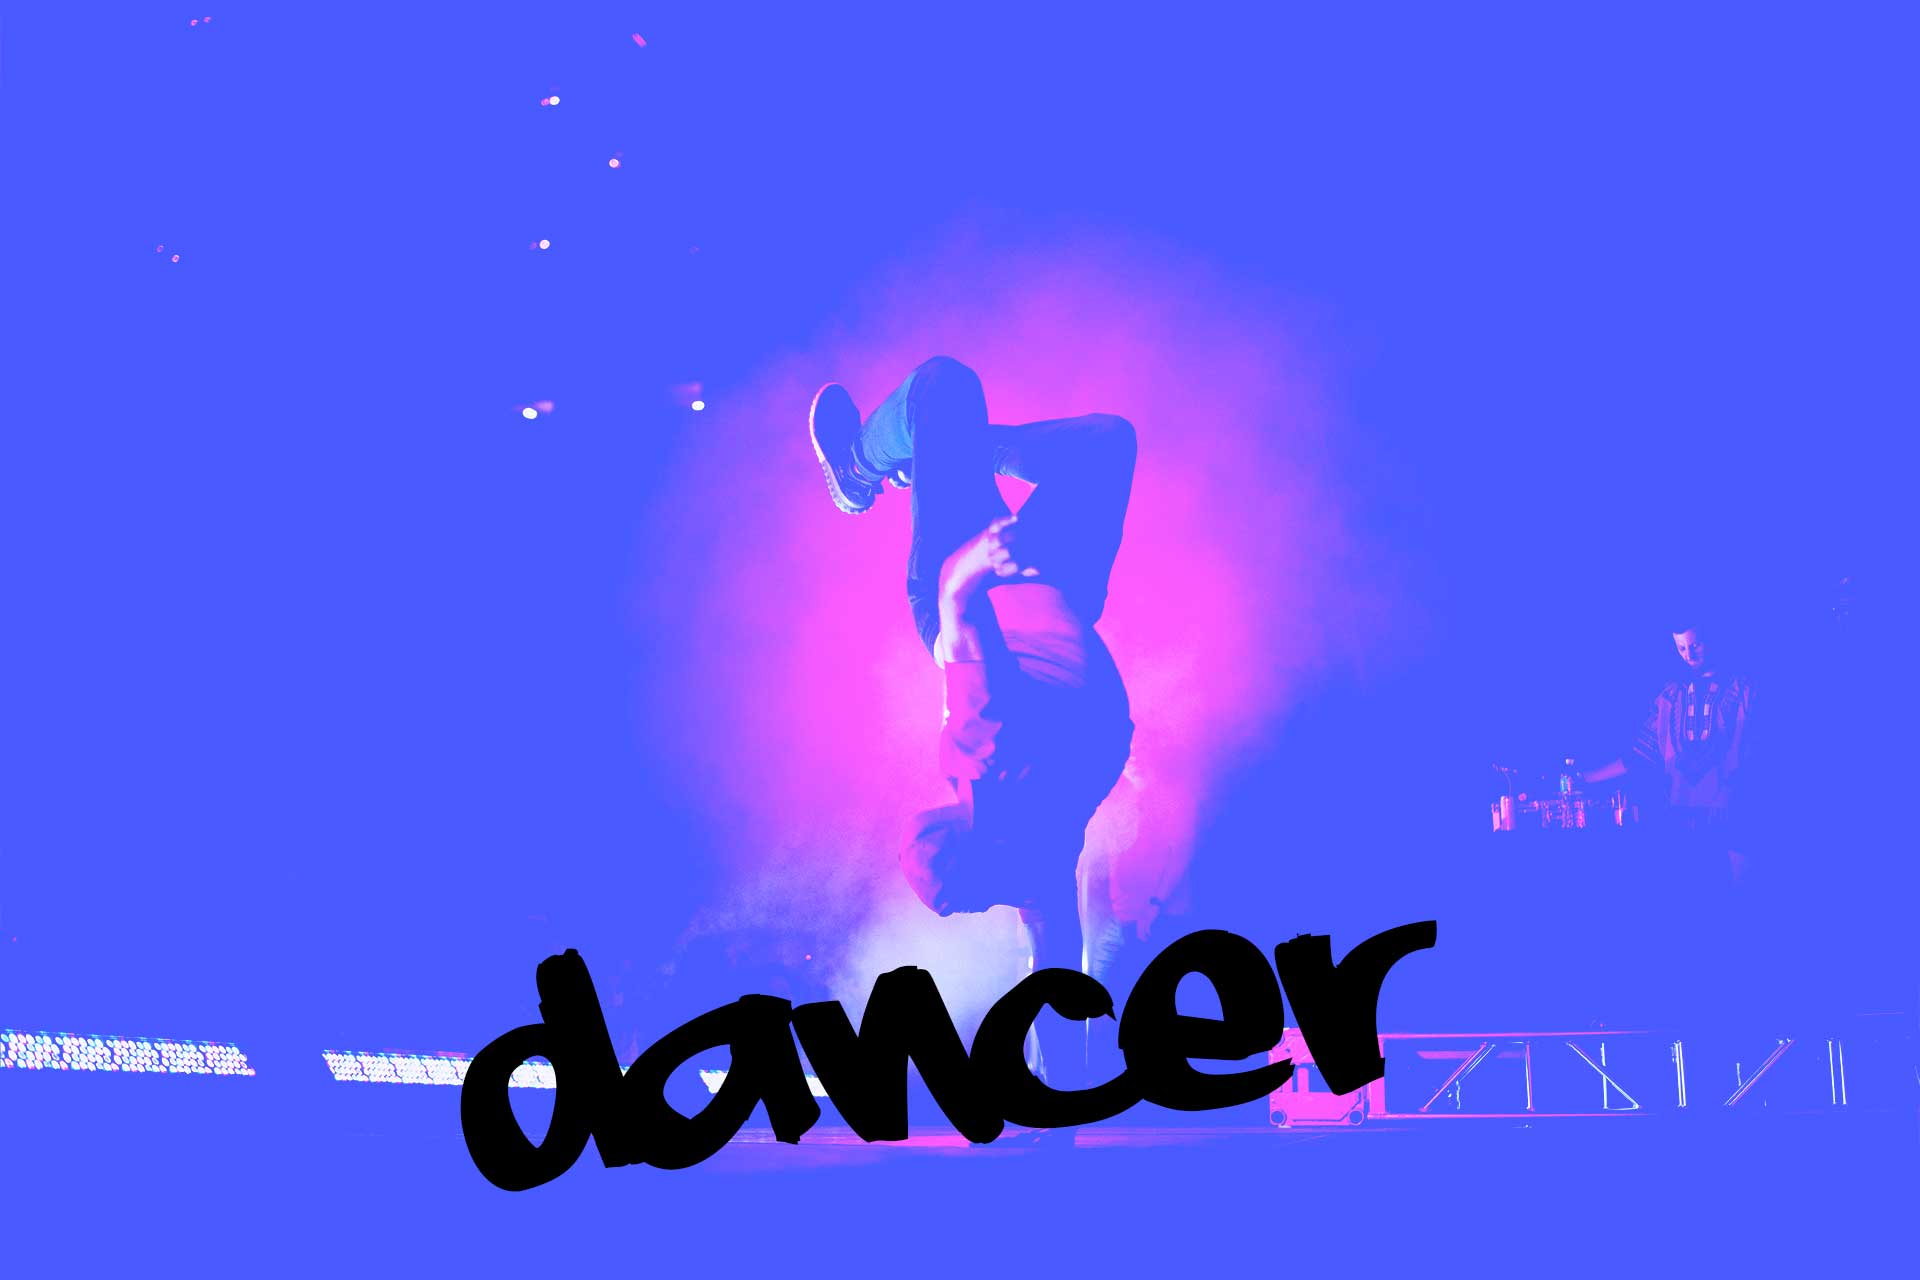 dancer